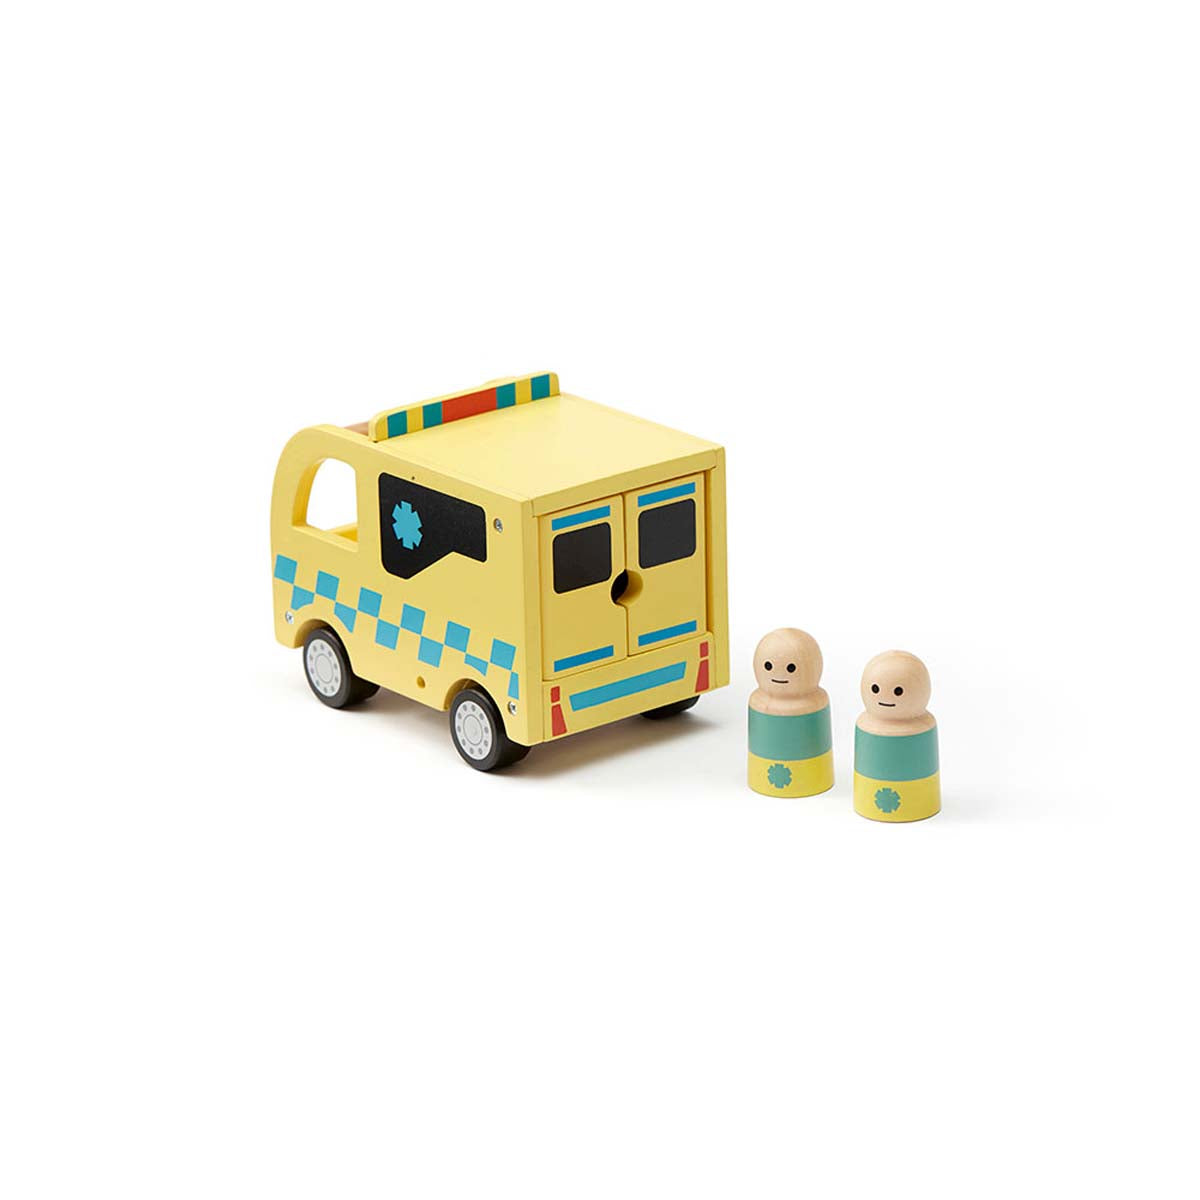 Taatuu, taatuu, opgepast! Hier komt Kid’s Concept ambulance AIDEN aan! Deze super leuke houten ziekenauto is onmisbaar in de voertuigen collectie van jouw kindje. VanZus.